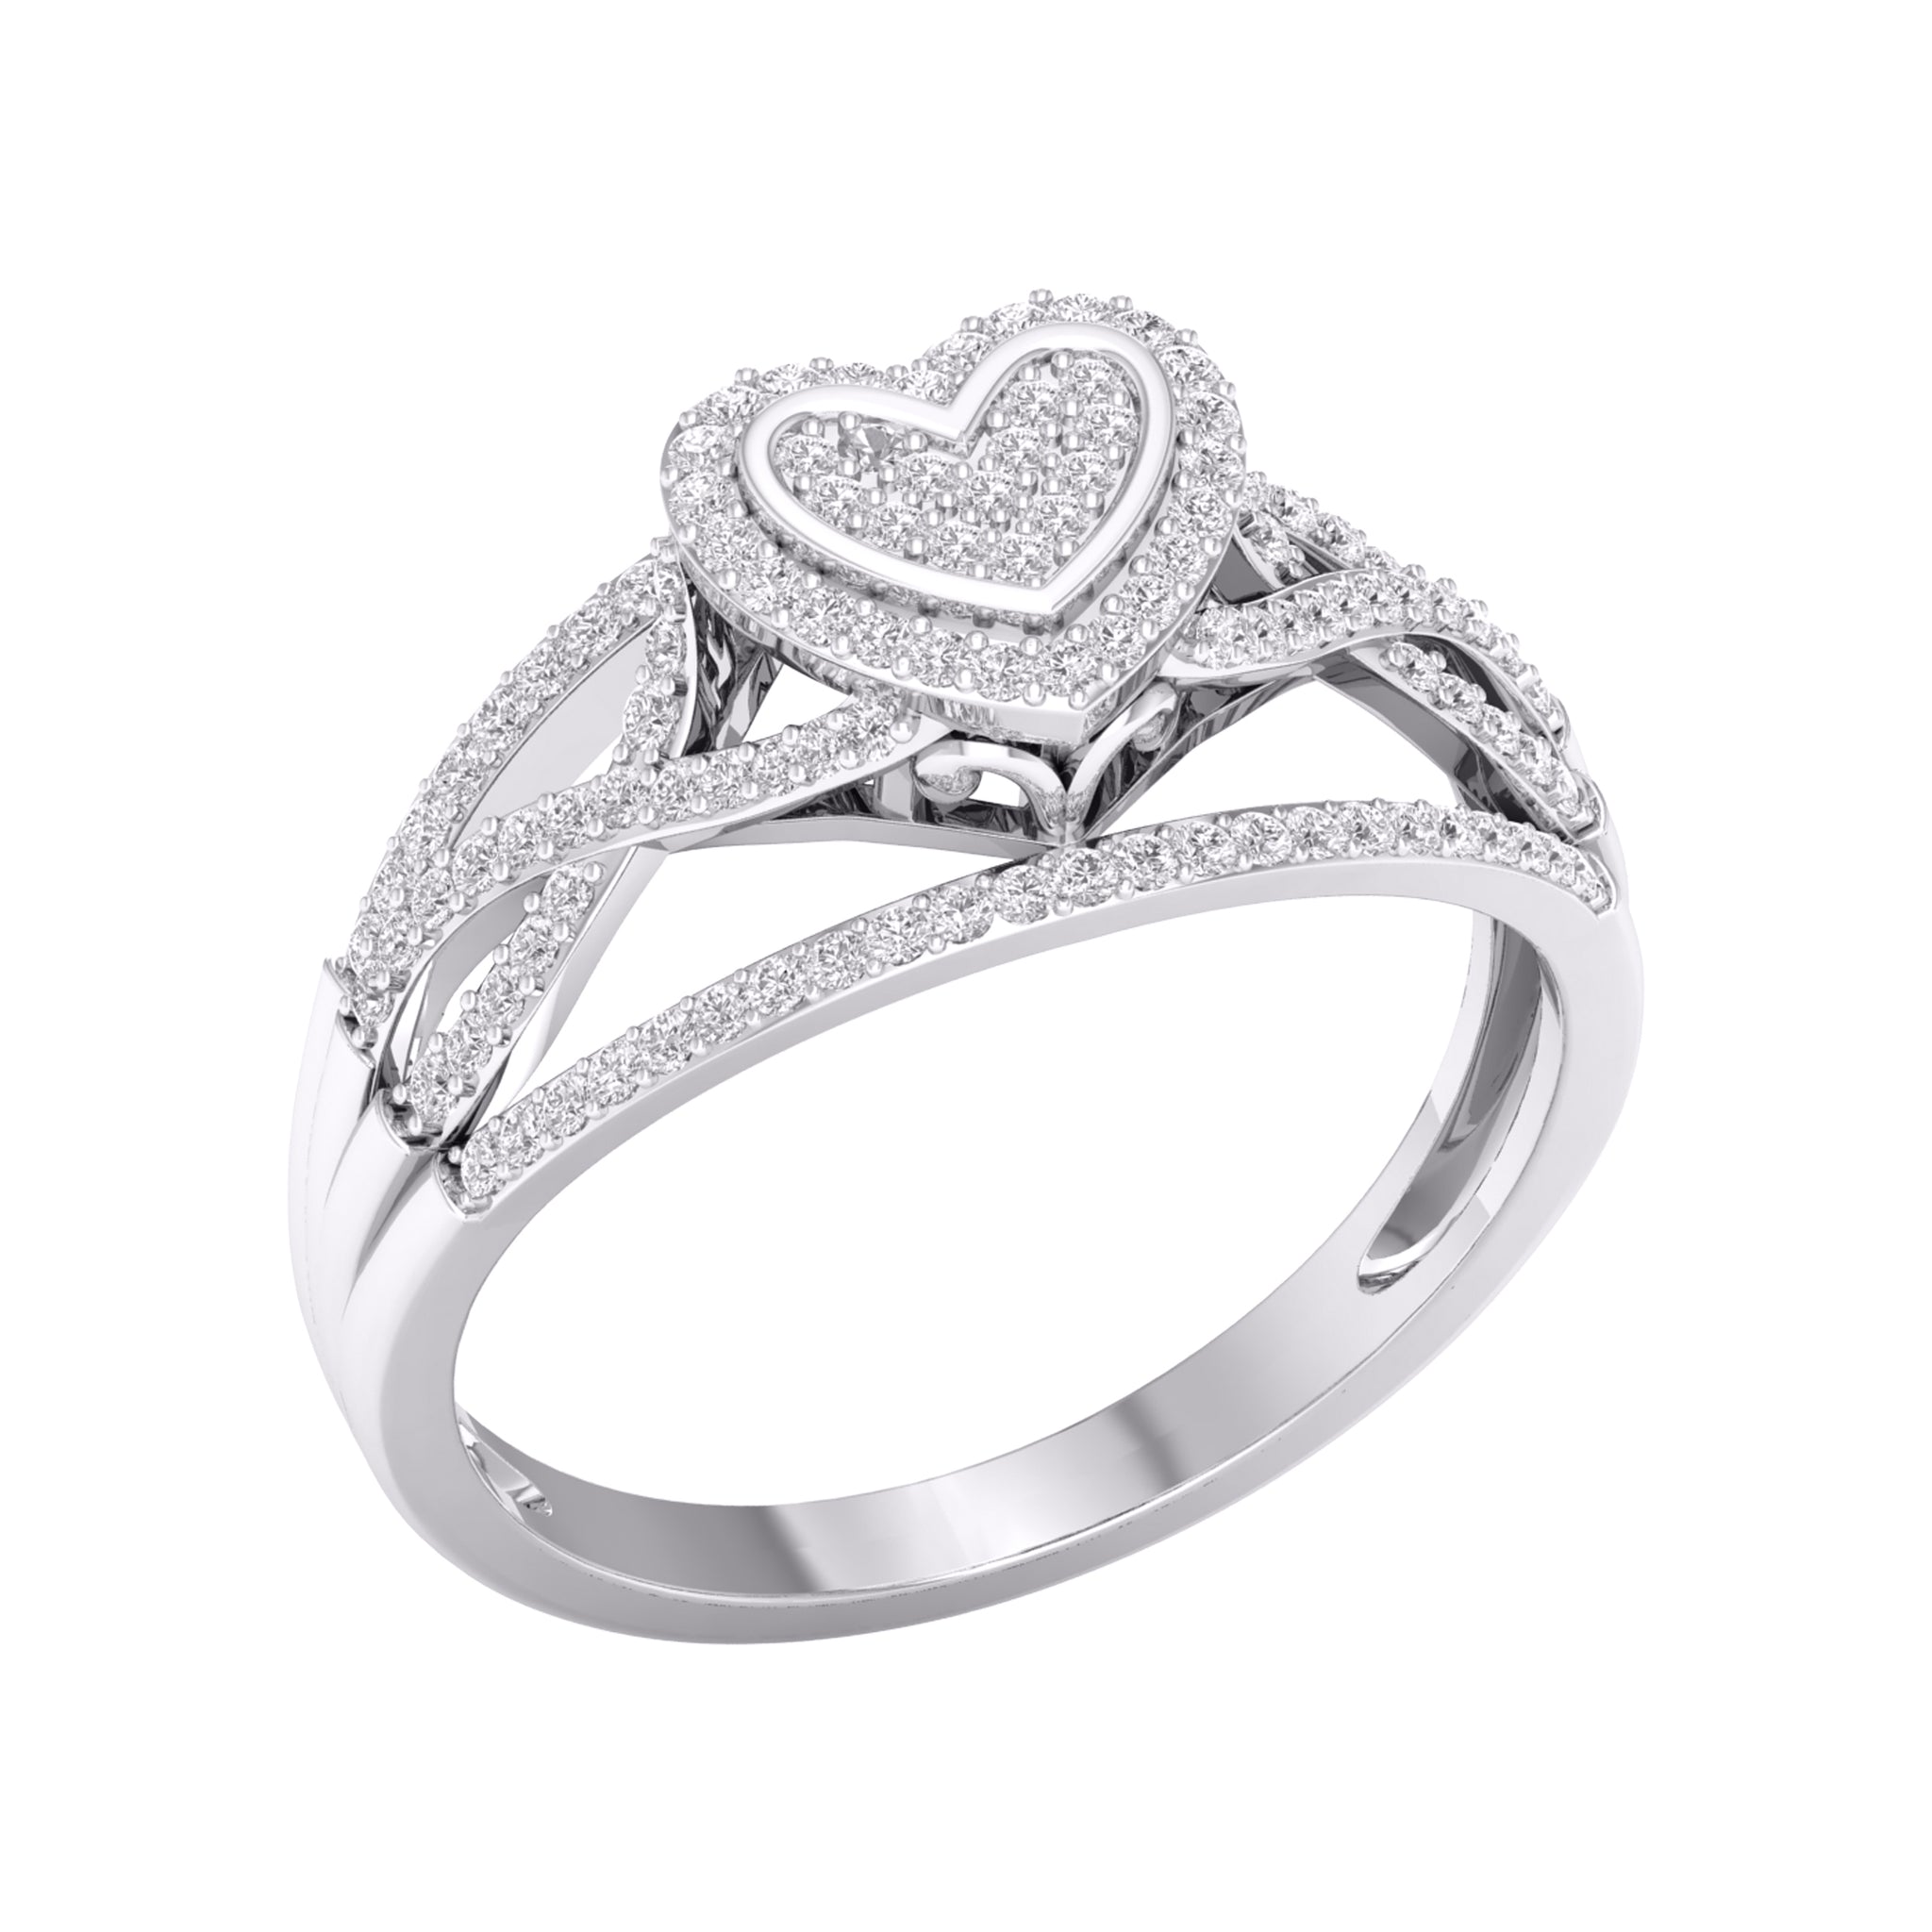 10KT White Gold 0.33 Carat Heart Ladies Ring-0227293-WG